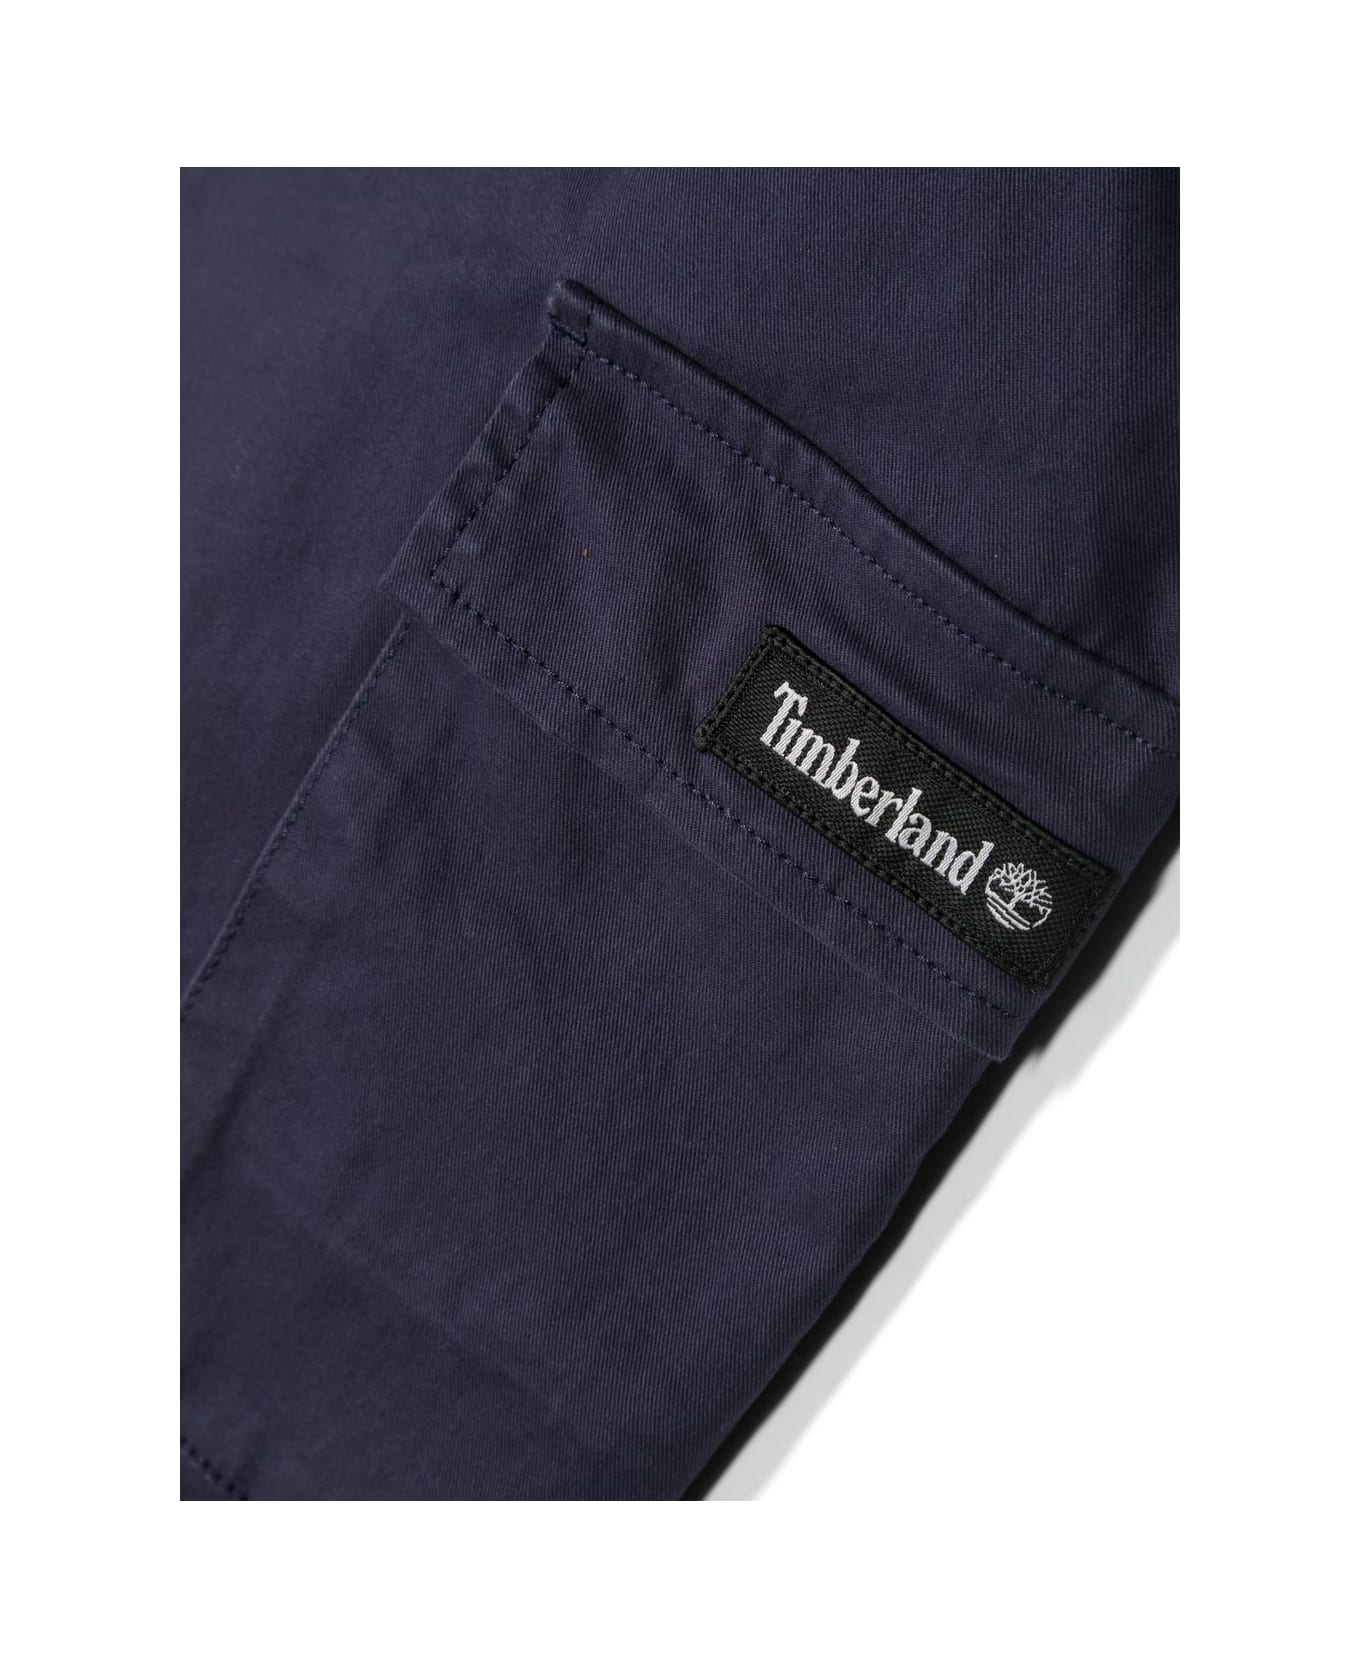 Timberland Pantaloni Blu Navy In Cotone Bambino - Blu